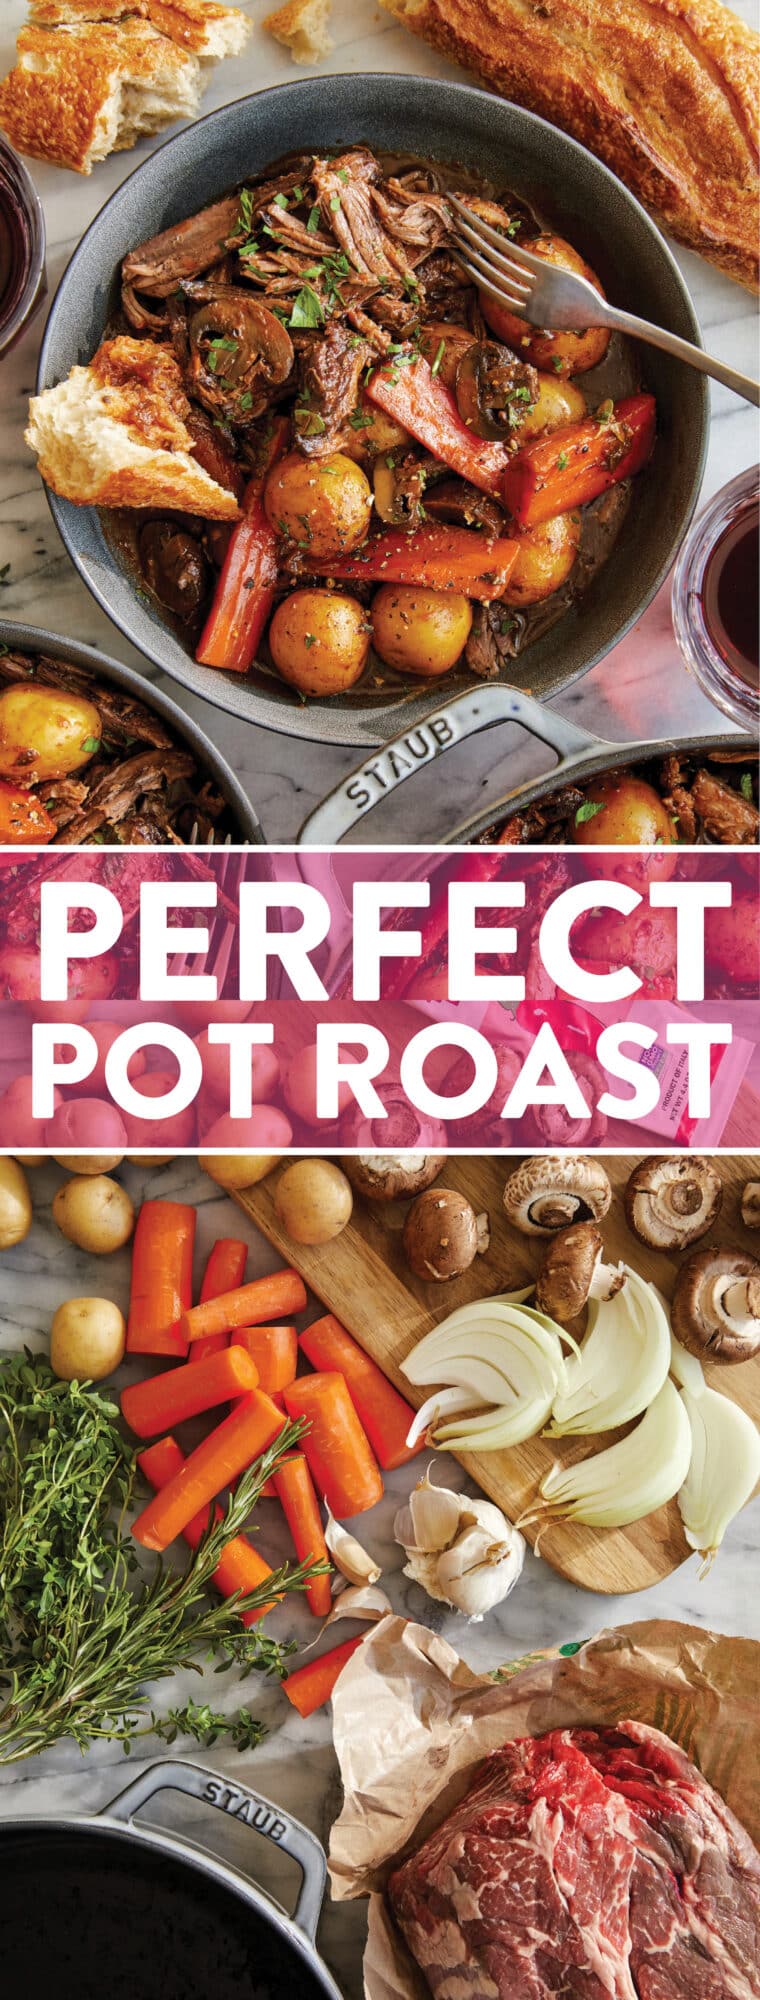 Perfect Pot Roast - Davvero il miglior arrosto che si scioglie in bocca, cotto a fuoco lento e cotto a fuoco lento fino alla perfezione.  Servire con crostini di pane!